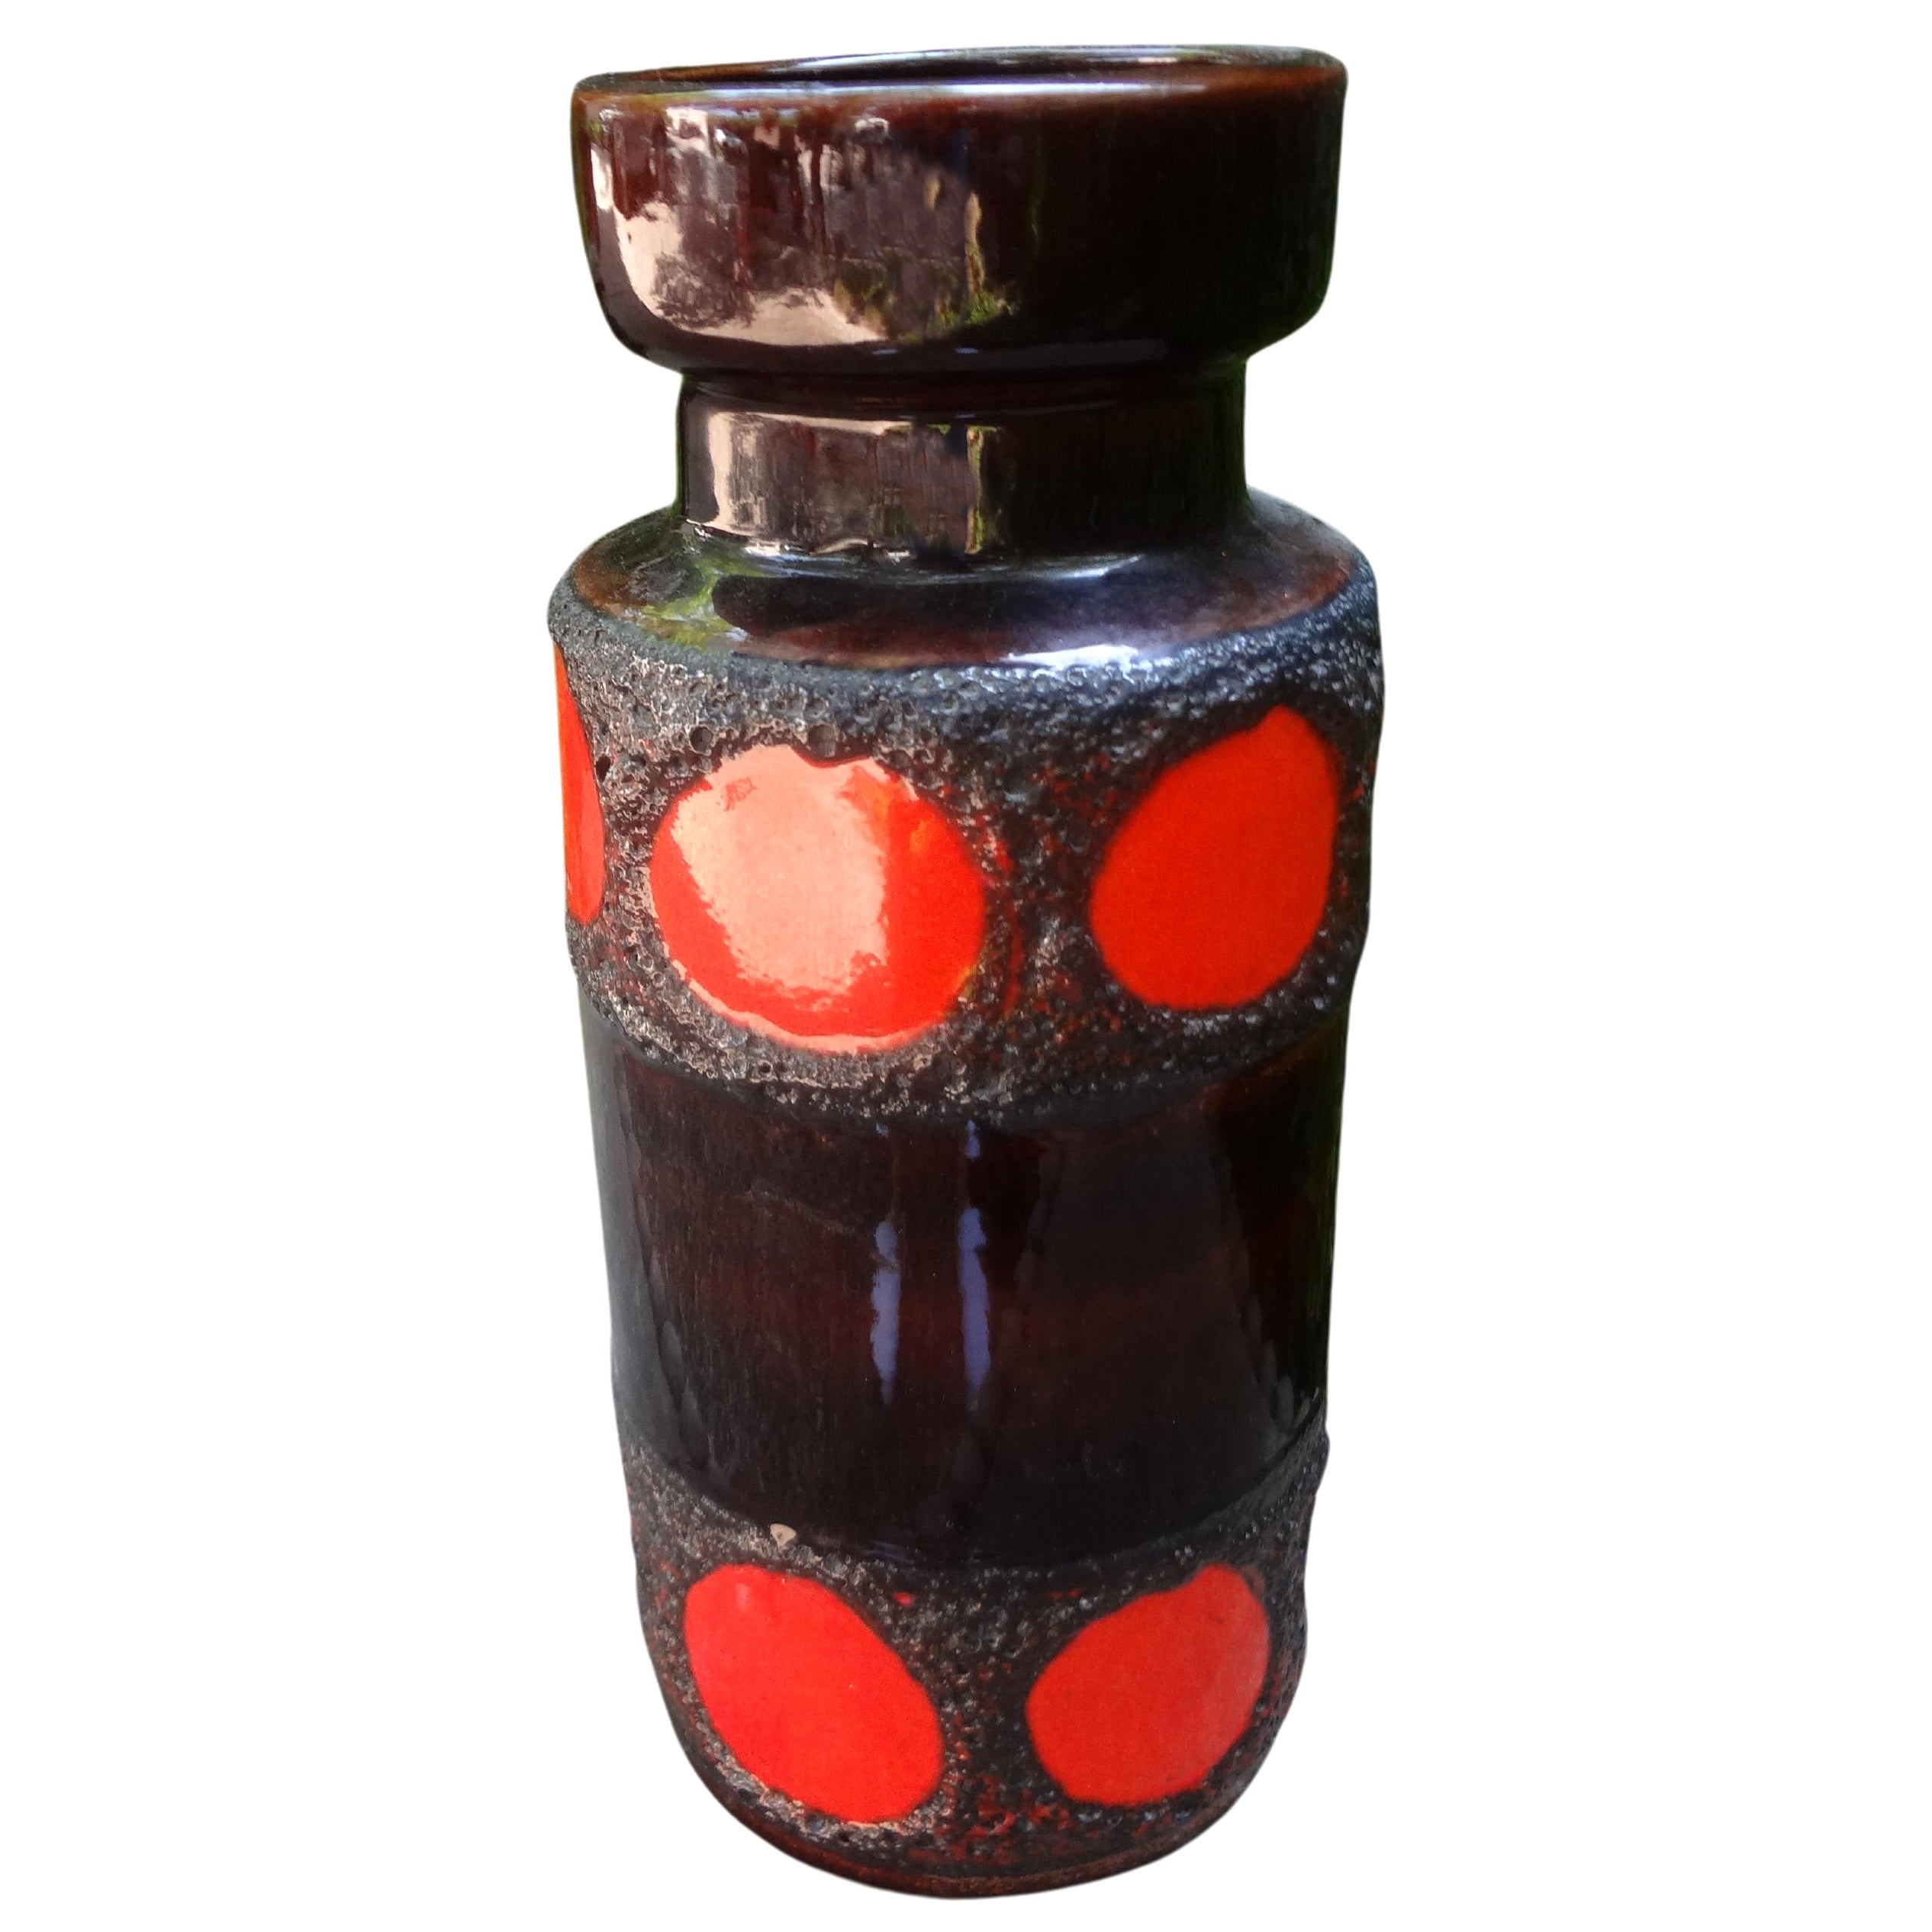 Vase en poterie émaillée d'Allemagne de l'Ouest avec un design géométrique